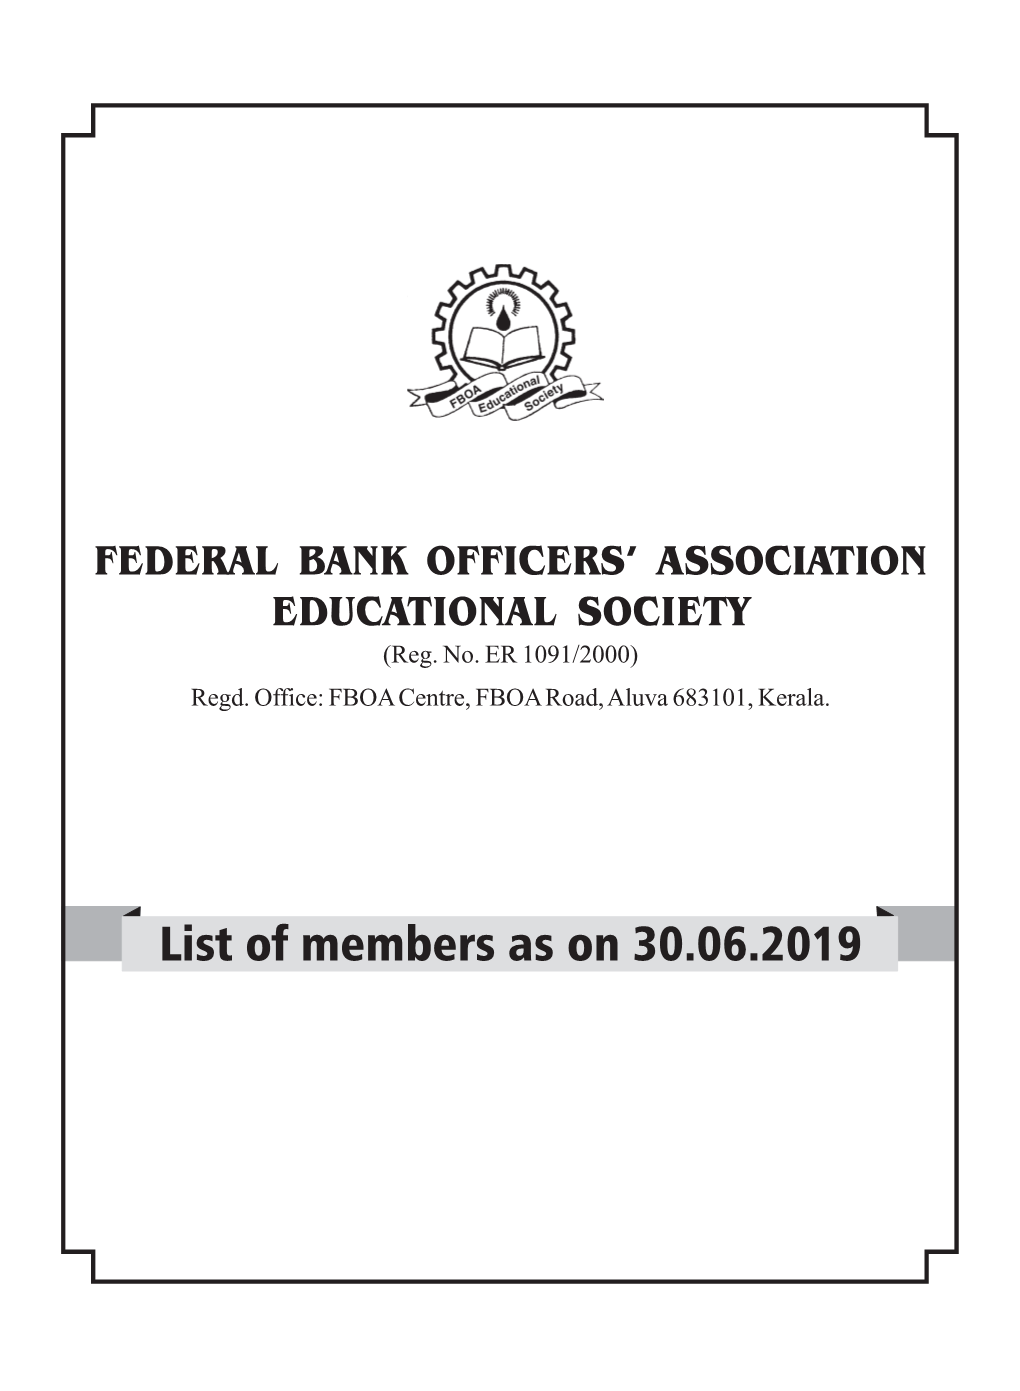 List of Members As on 30.06.2019 FBOAES List of Members As on 30-06-2019 Membership Membership Sl PF Certificate Name Sl PF Certificate Name No No No